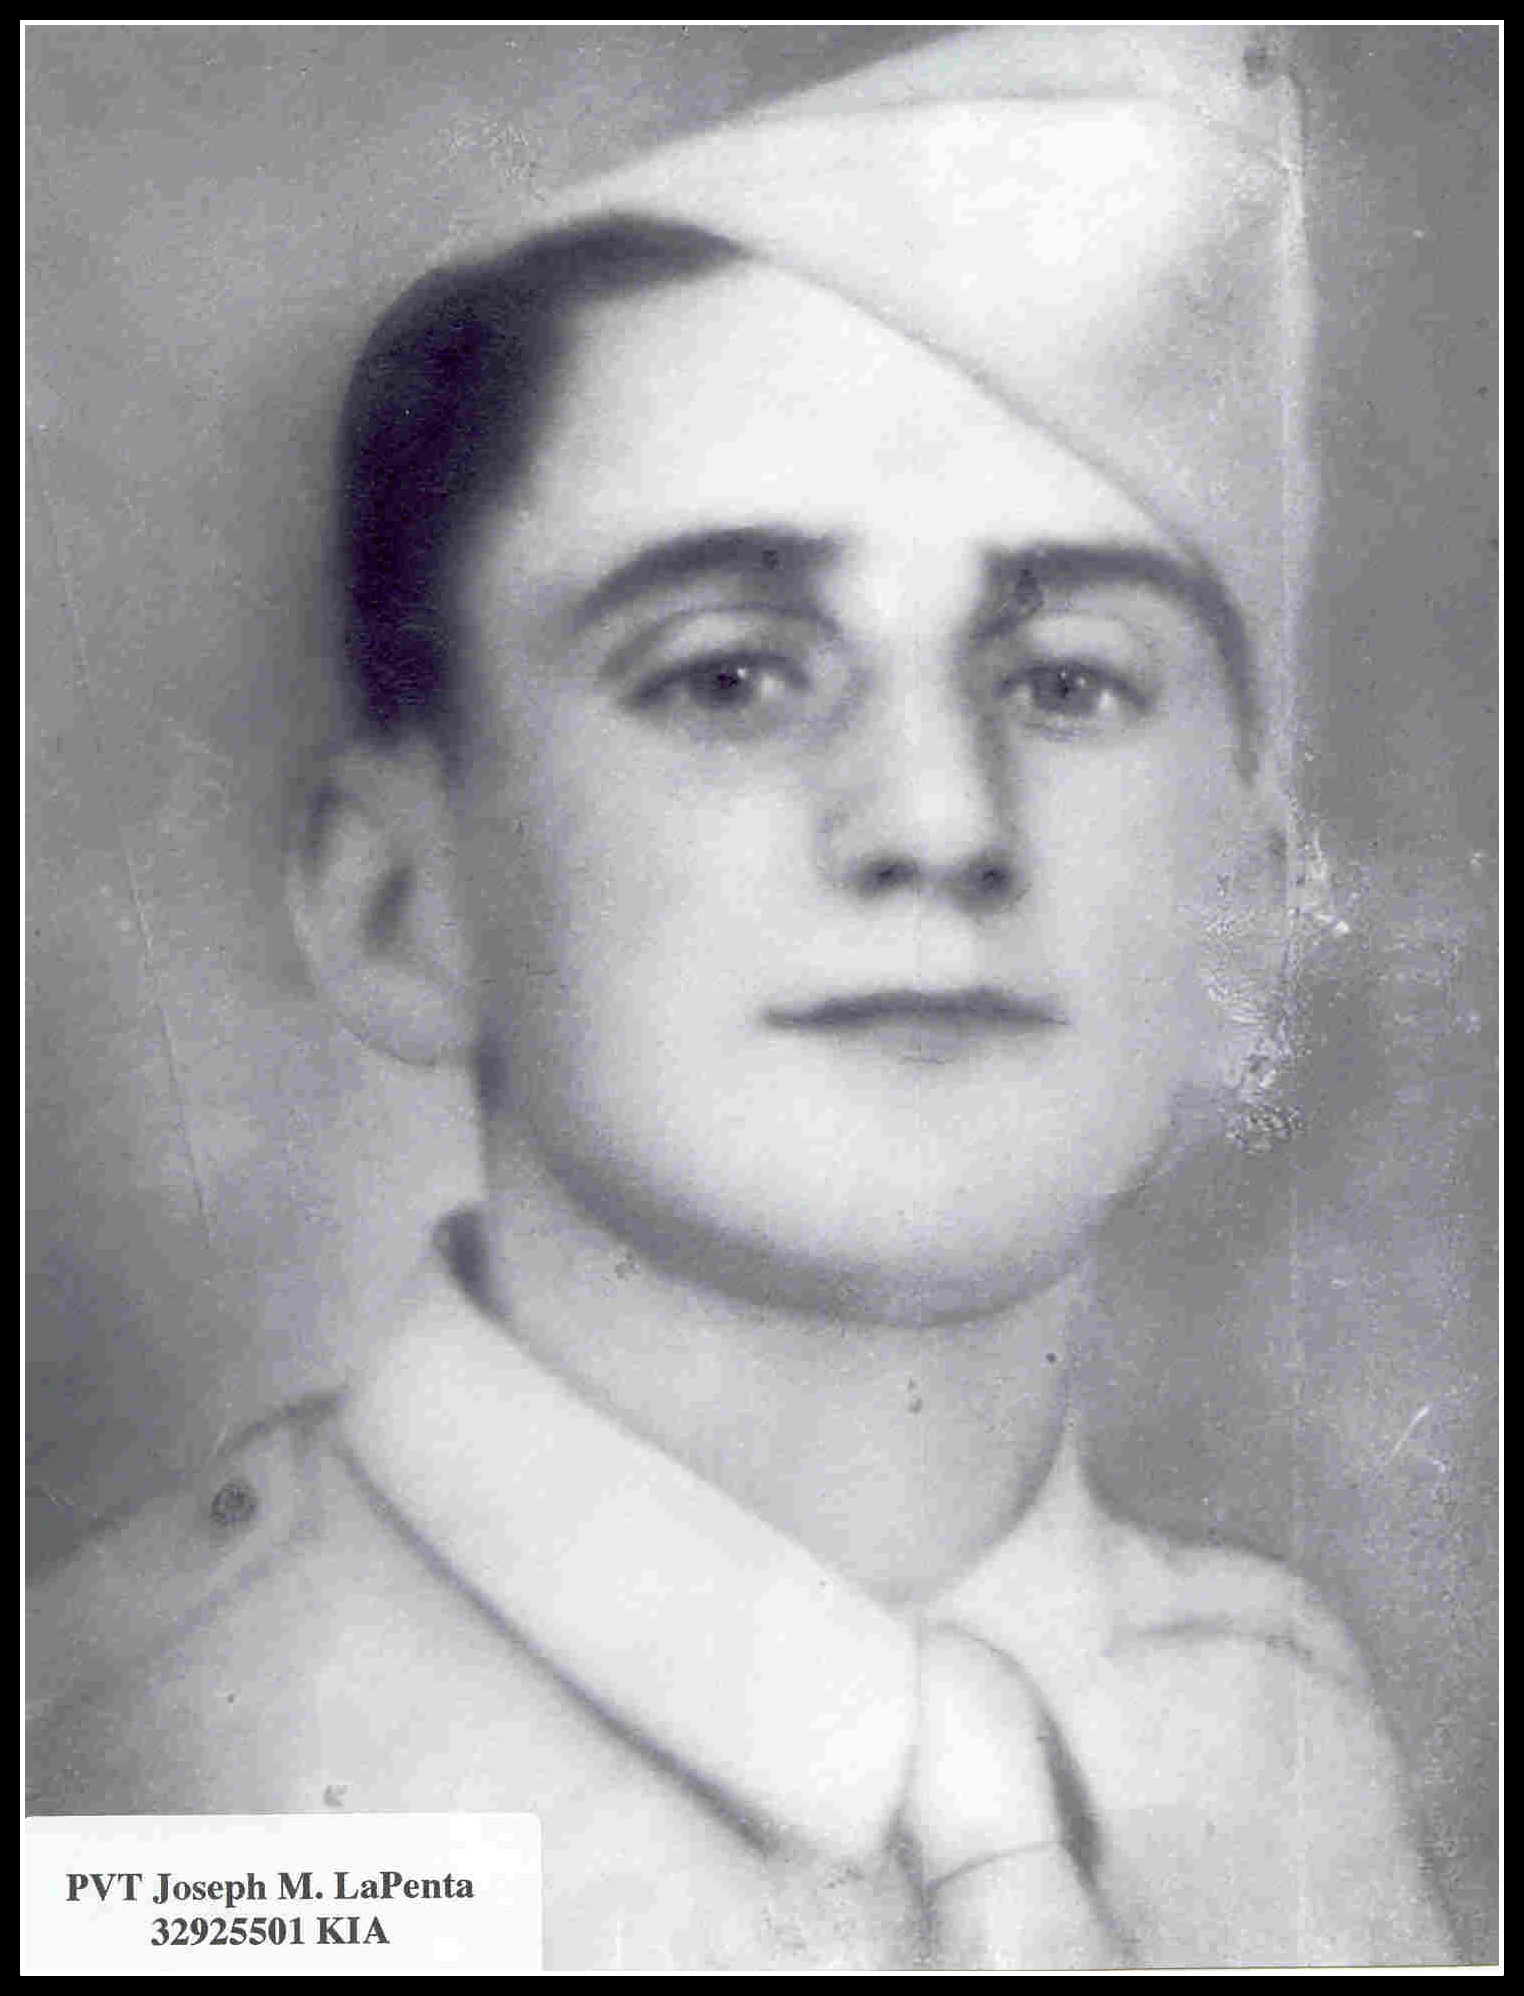 Private Joseph LaPenta killed in action in Italy, Jan. 21, 1944